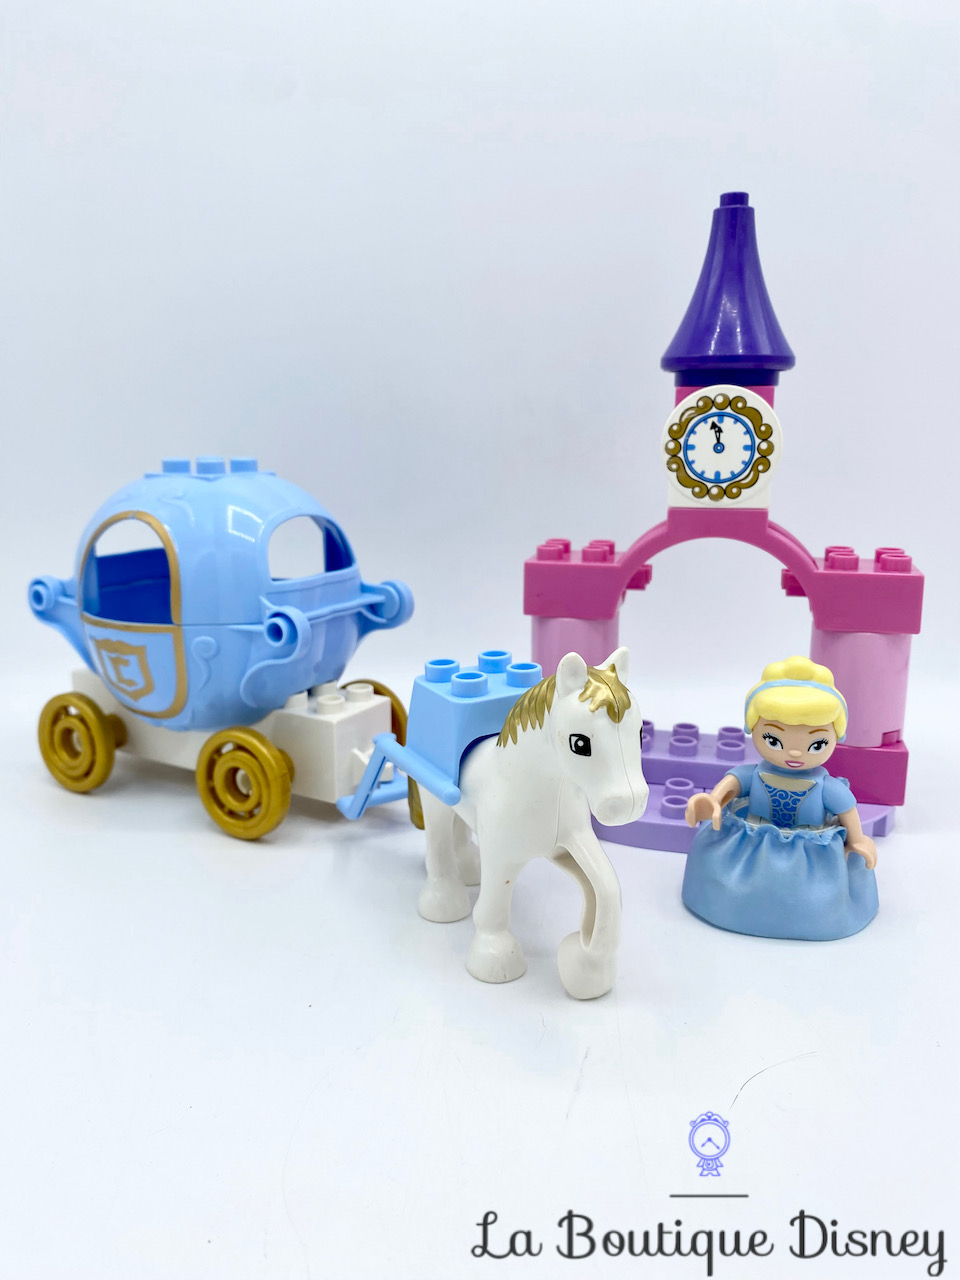 Jouet LEGO DUPLO 6153 Le Carrosse de Cendrillon Disney Princess